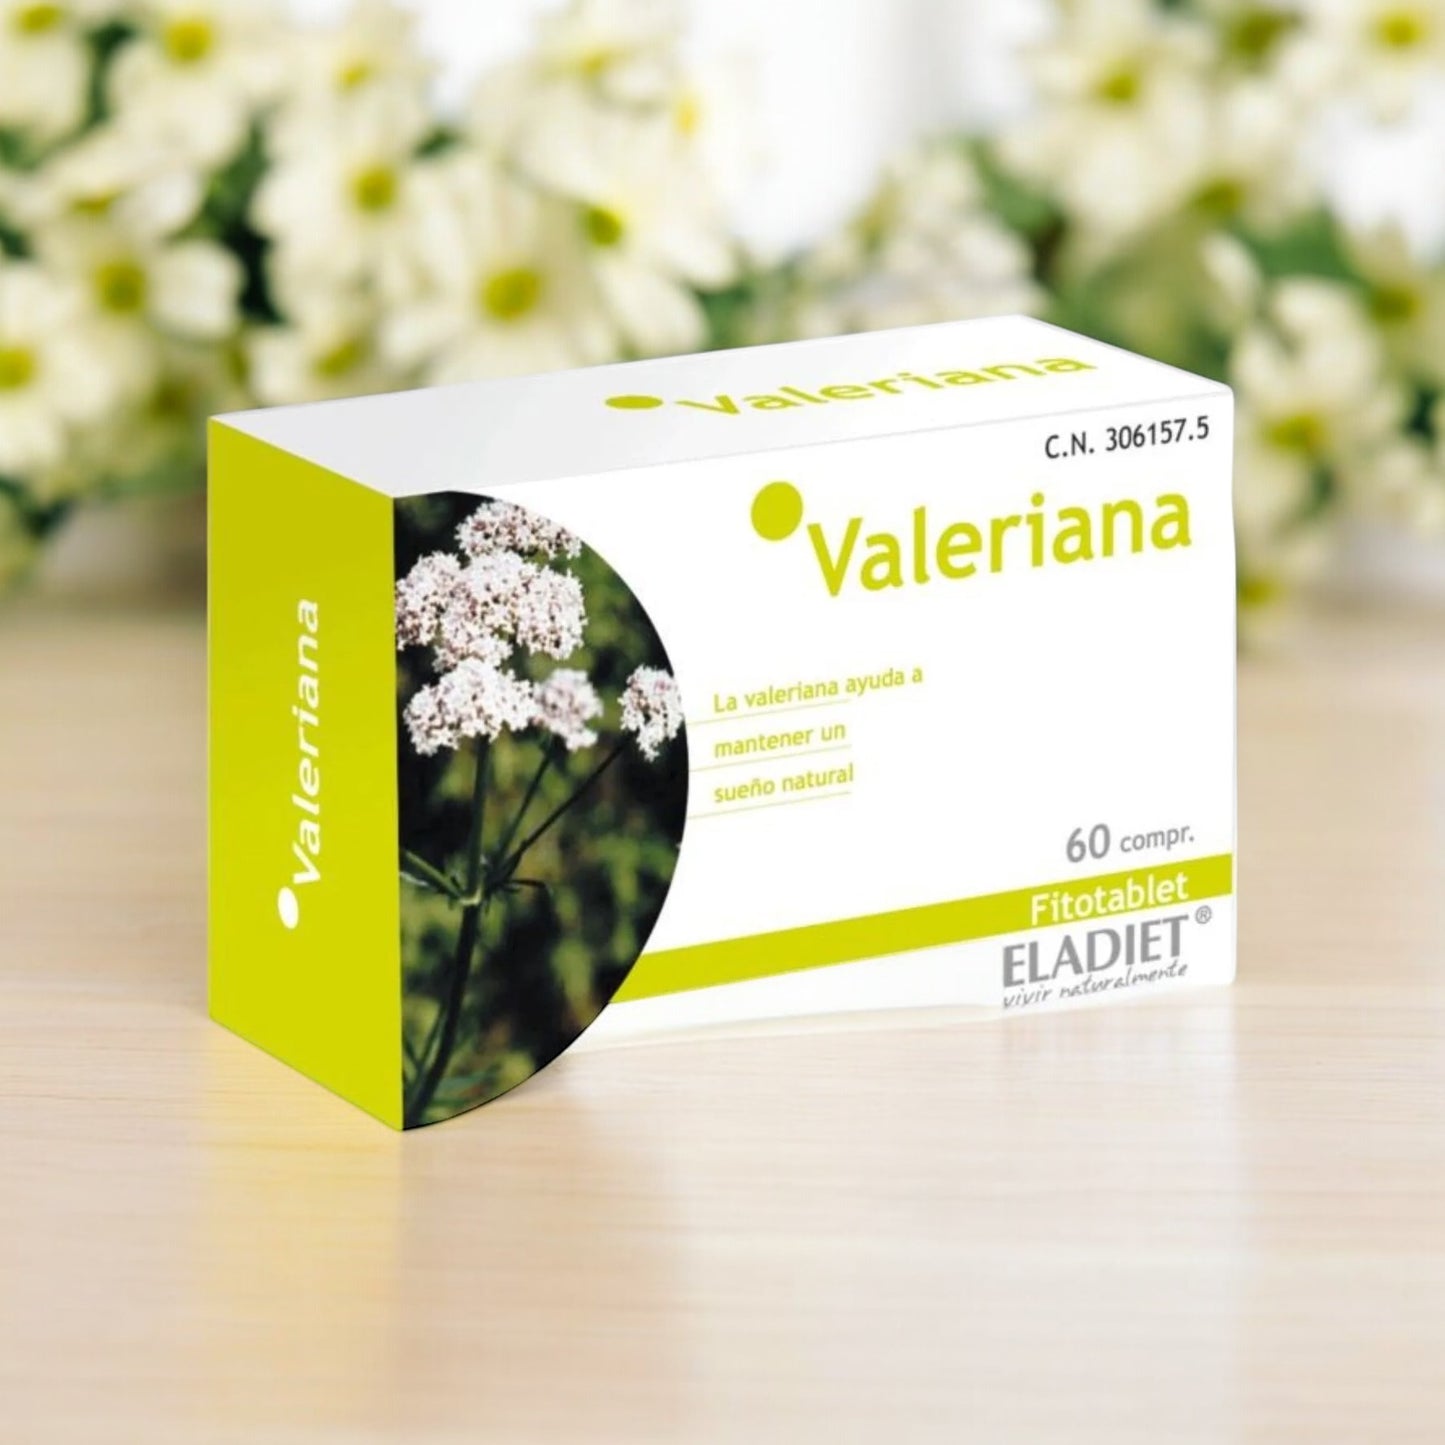 Eladiet Valeriana 60 Comprimidos